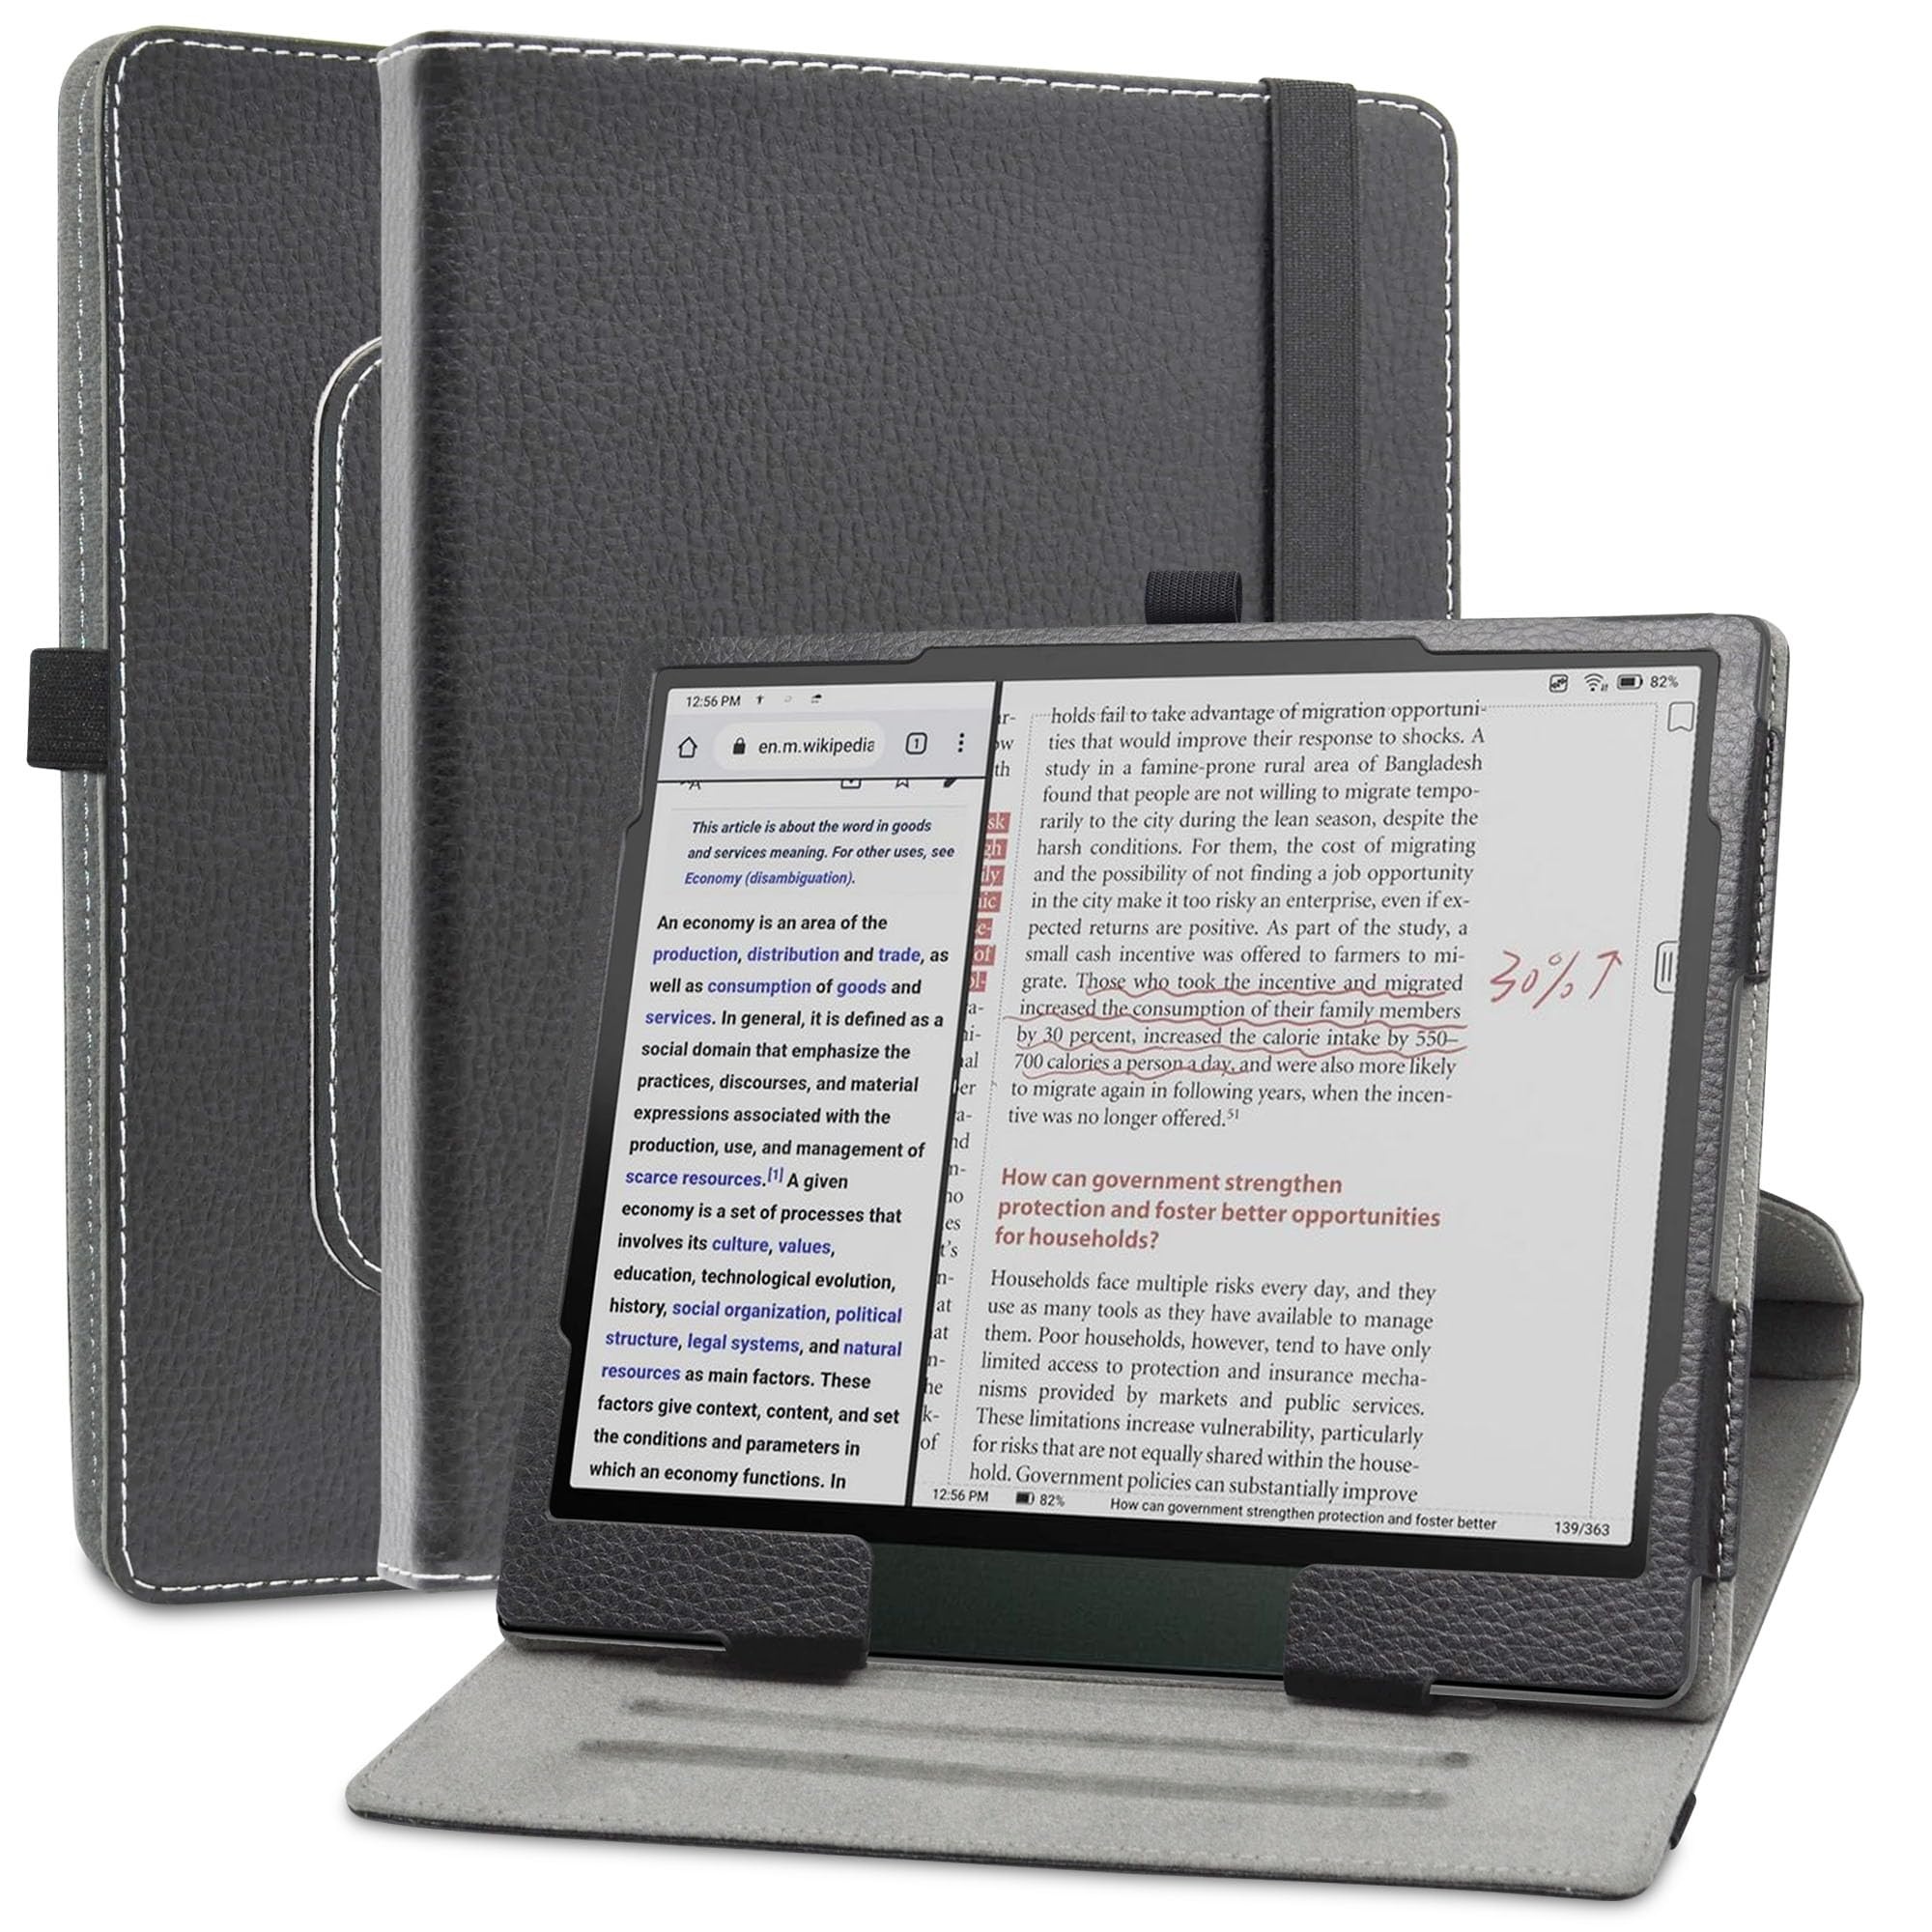 MAMA MOUTH Kompatibel mitBOOX Note Air 3 C hülle,360° Drehbarer Stand Cover Premium Schutzhülle Tasche Etui mit Ständerfunktion Case für BOOX Note Air 3 C 10.3 Inch Tablet,Schwarz